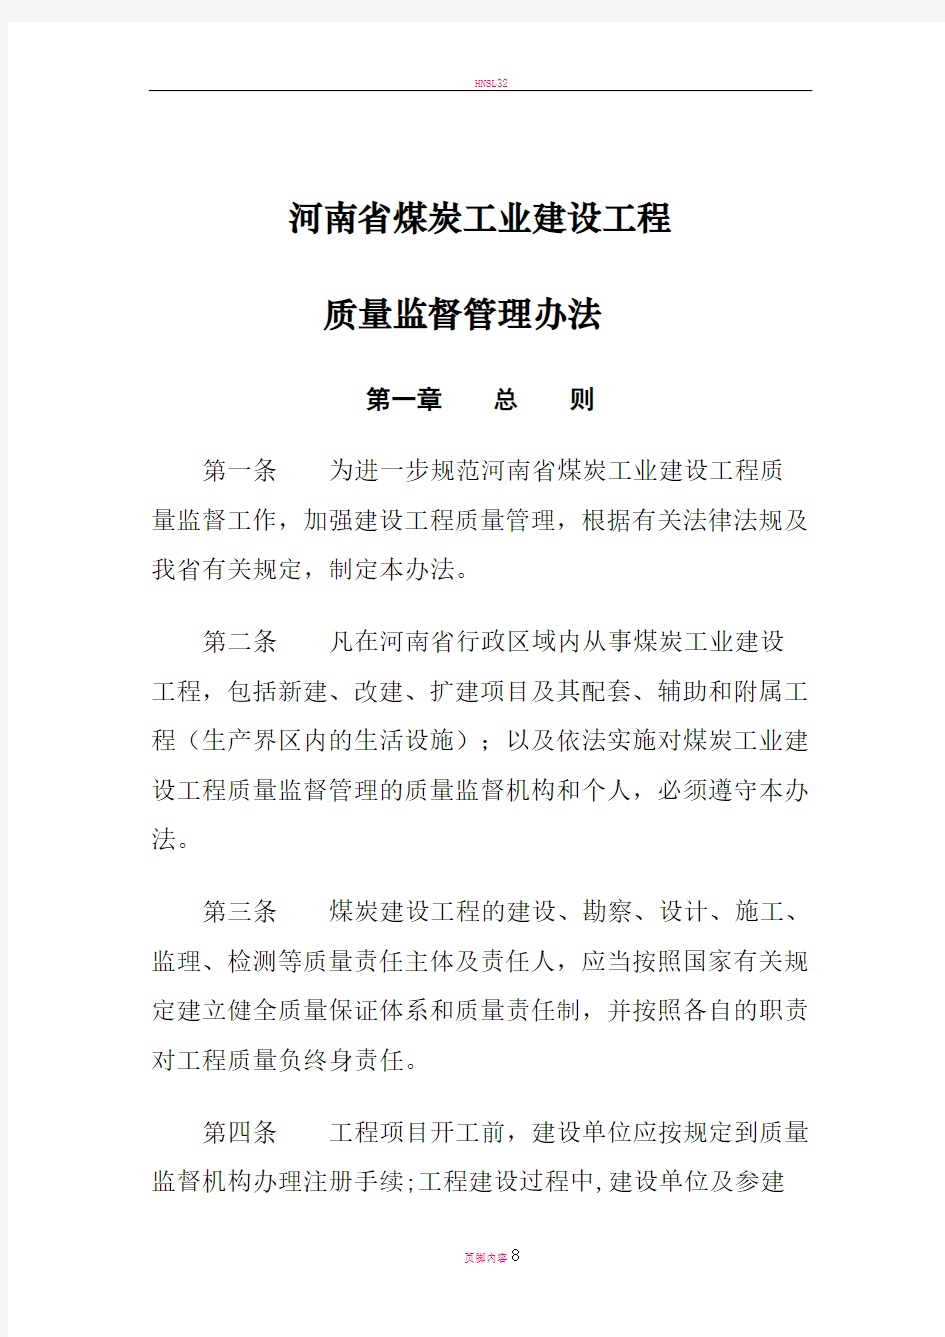 河南省煤炭工业建设工程质量监督管理办法(试行)